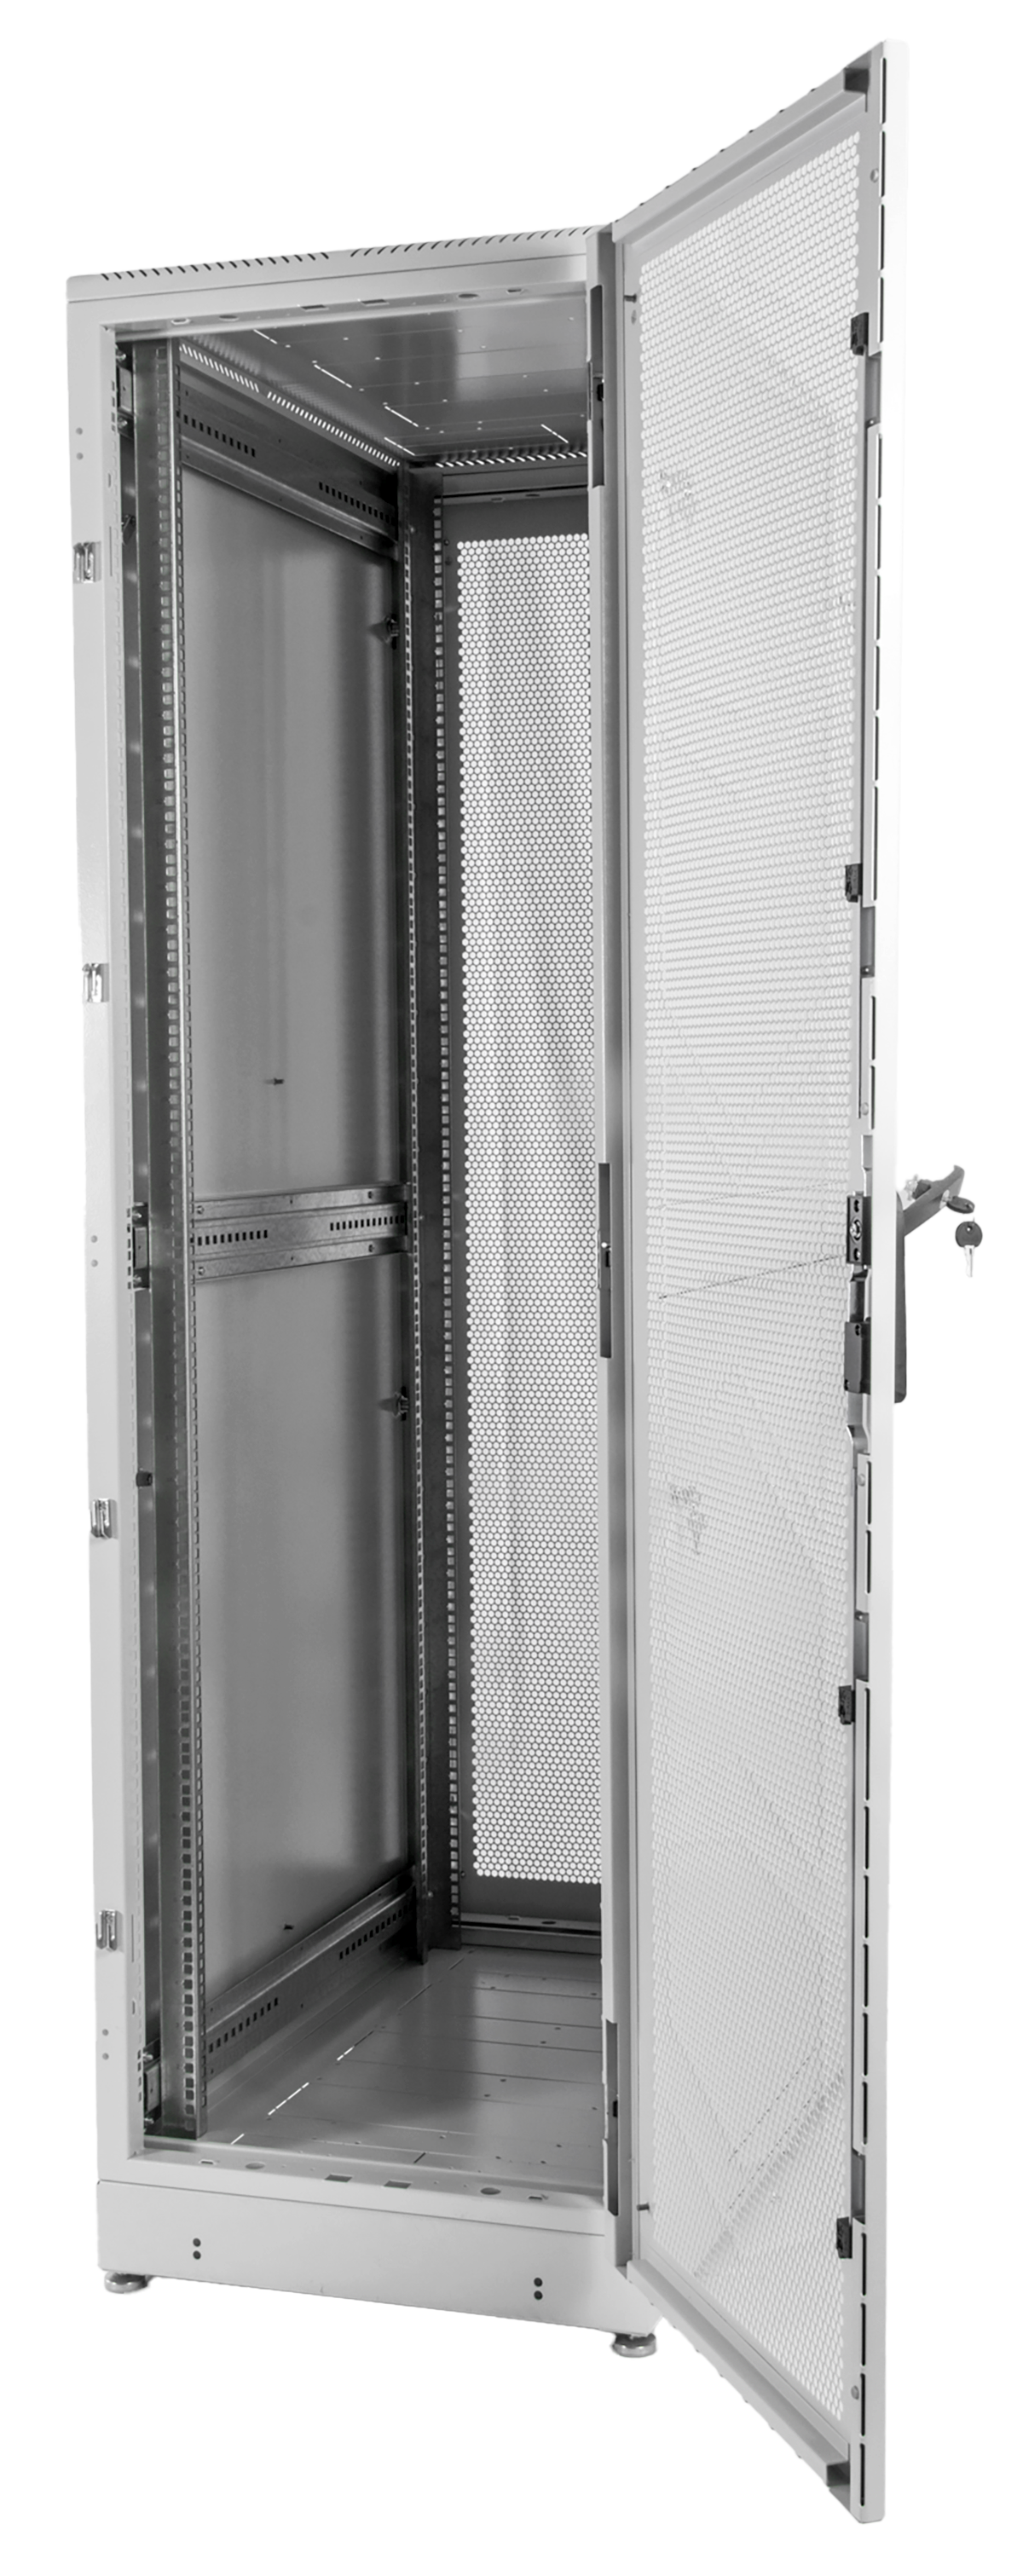 Шкаф серверный напольный 42U (600 × 1000) дверь перфорированная, задние двойные перф., цвет черный